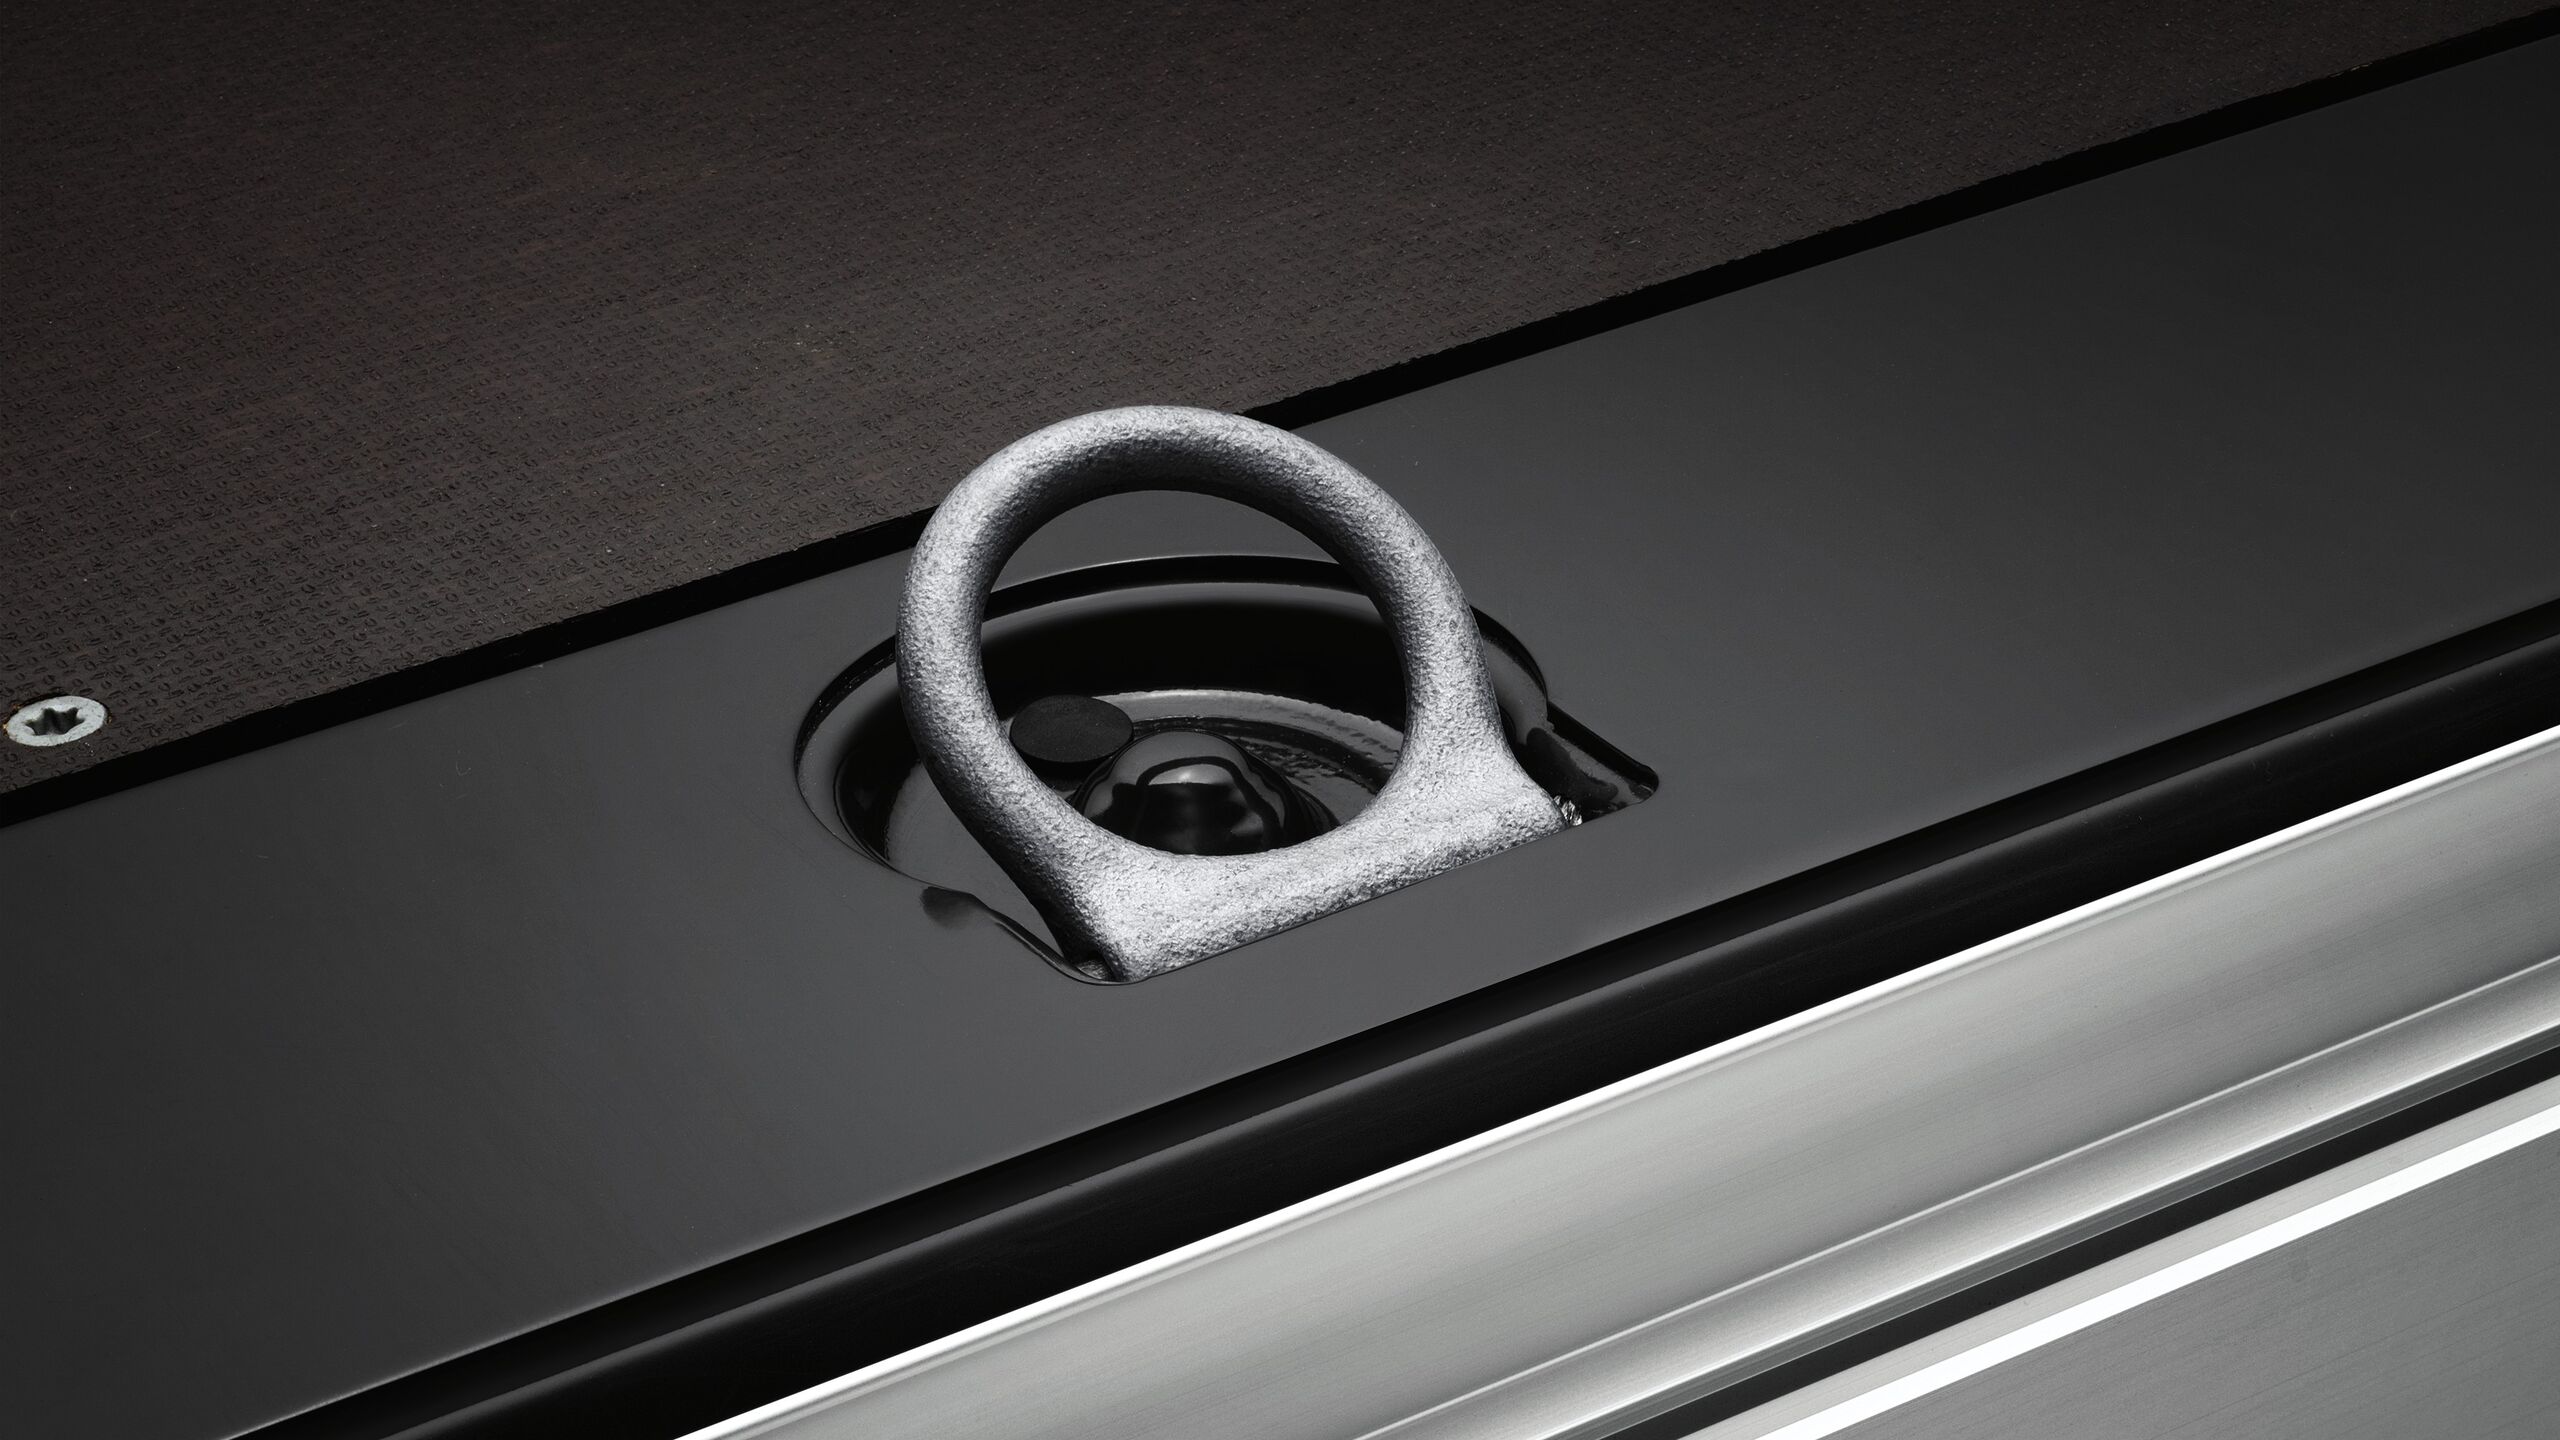 Shinat fiksuese dhe unazat lidhëse në pjesën e ngarkesës së furgonit Crafter të Volkswagen Automjete Komerciale.